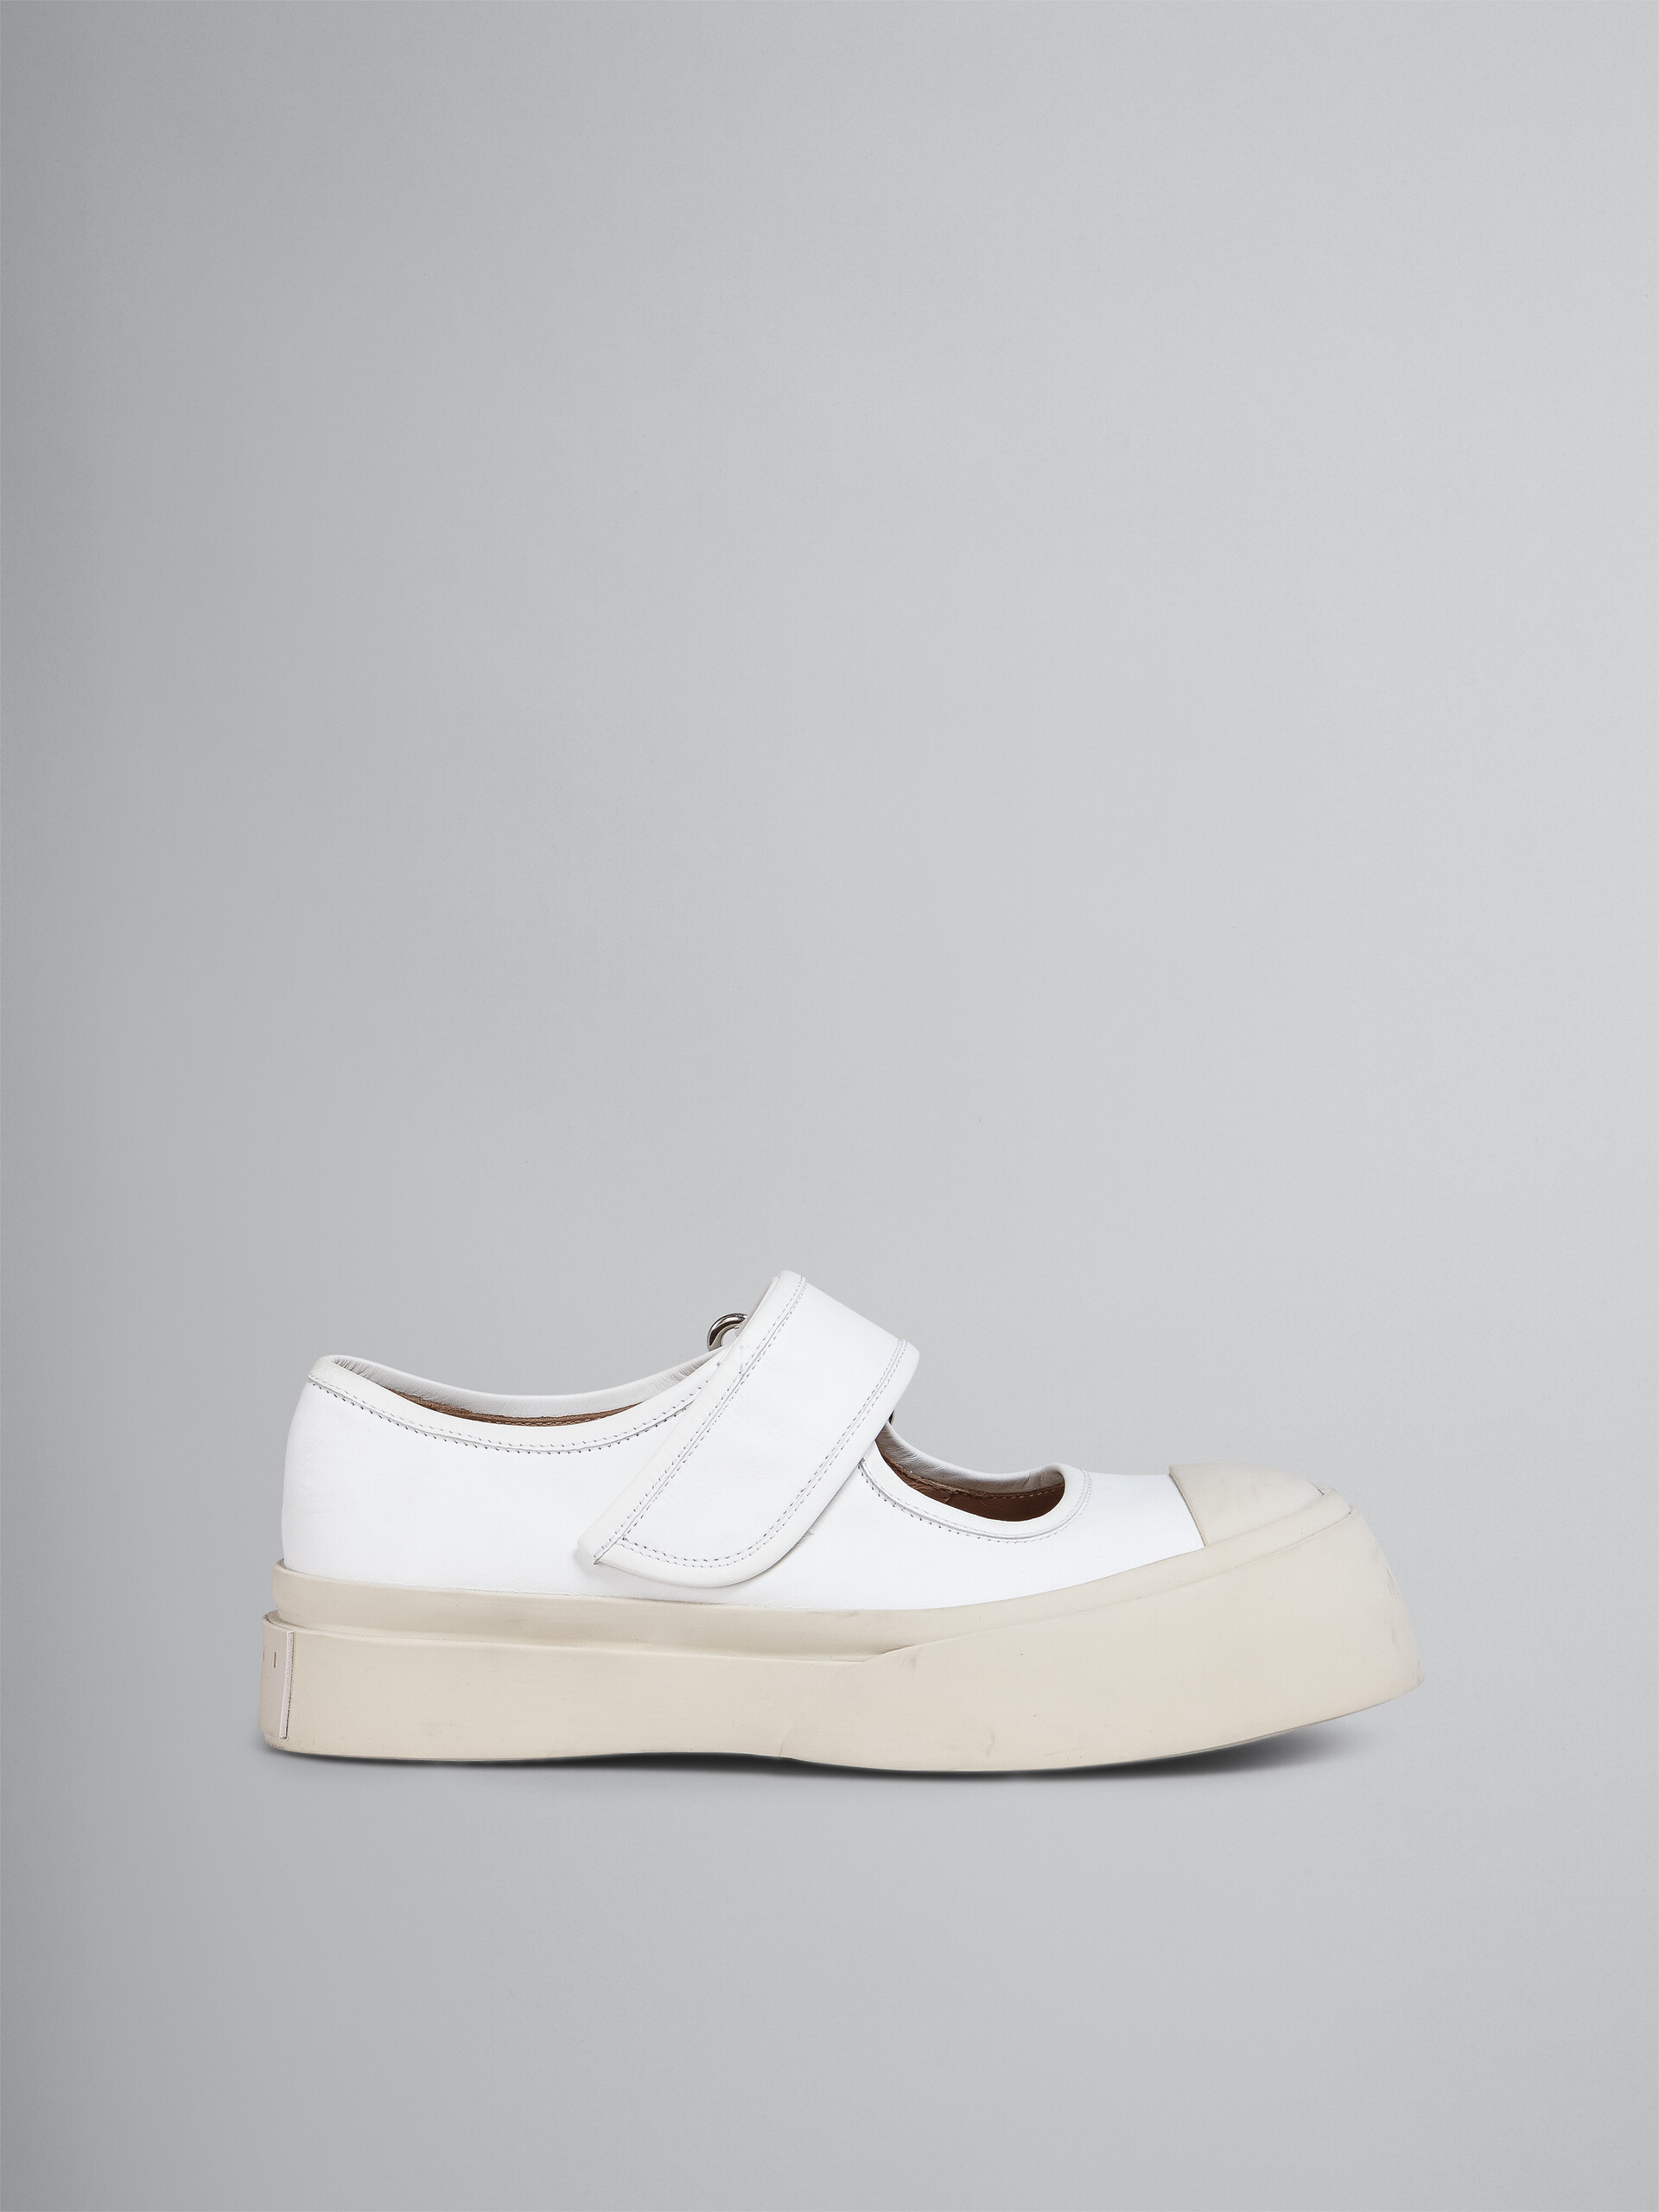 Zapatilla Mary Jane de nappa blanca - Sneakers - Image 1